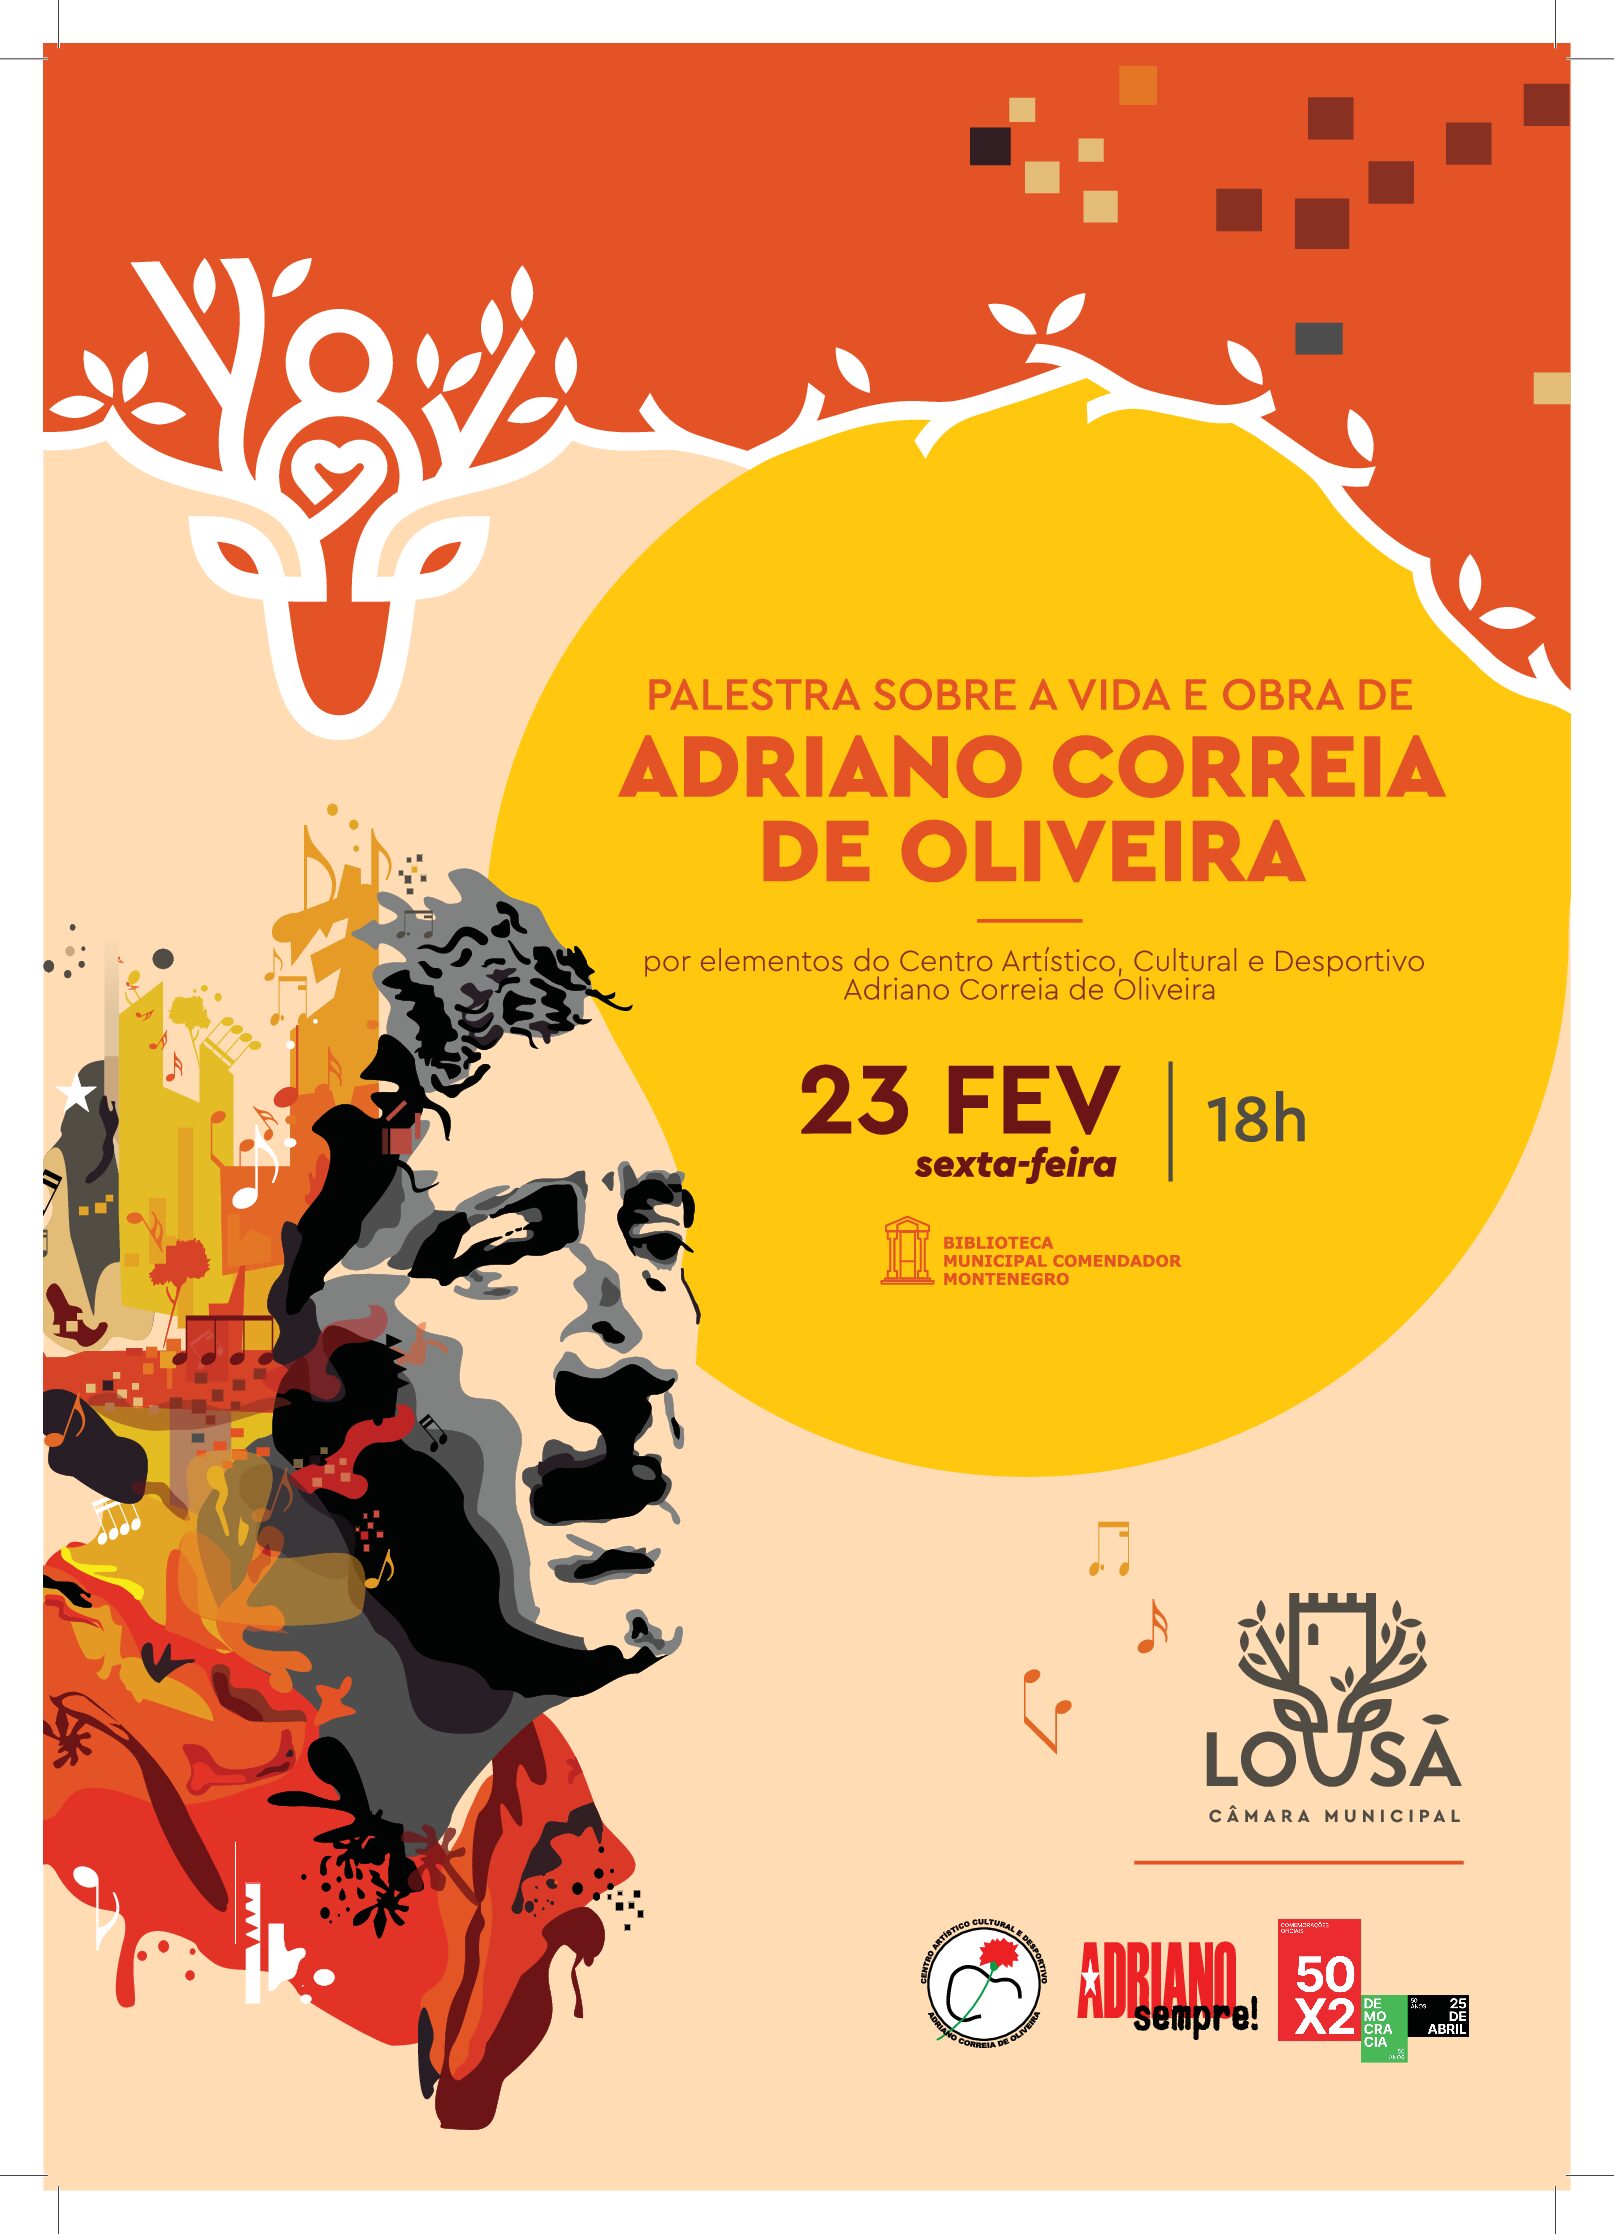 Capa Oficial do Evento Palestra sobre a Vida e Obra de Adriano Correia de Oliveira